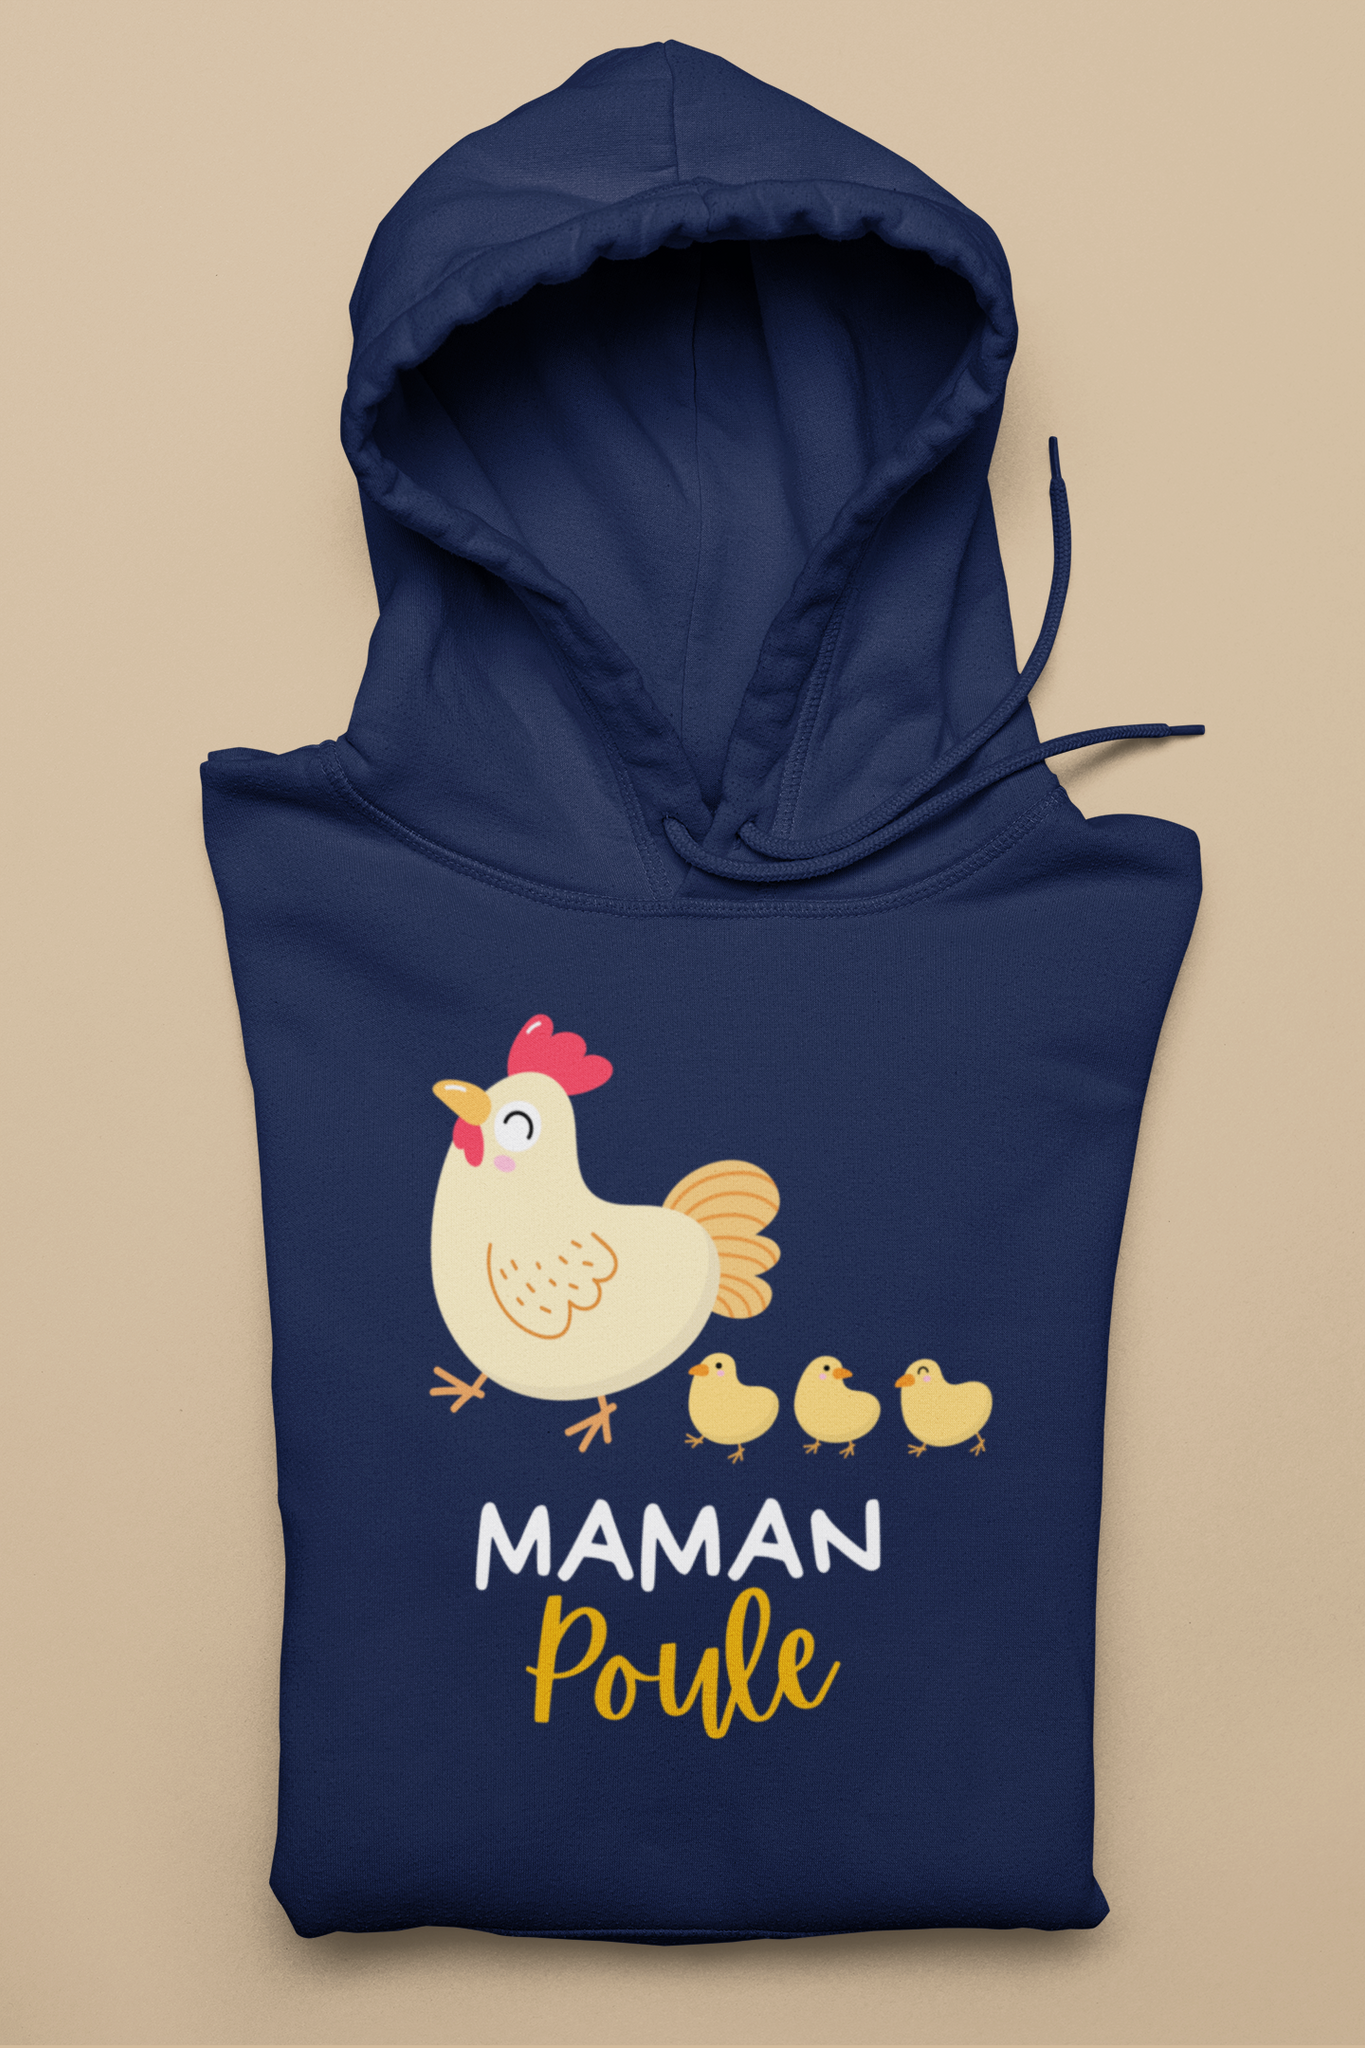 Kangourou - Maman poule